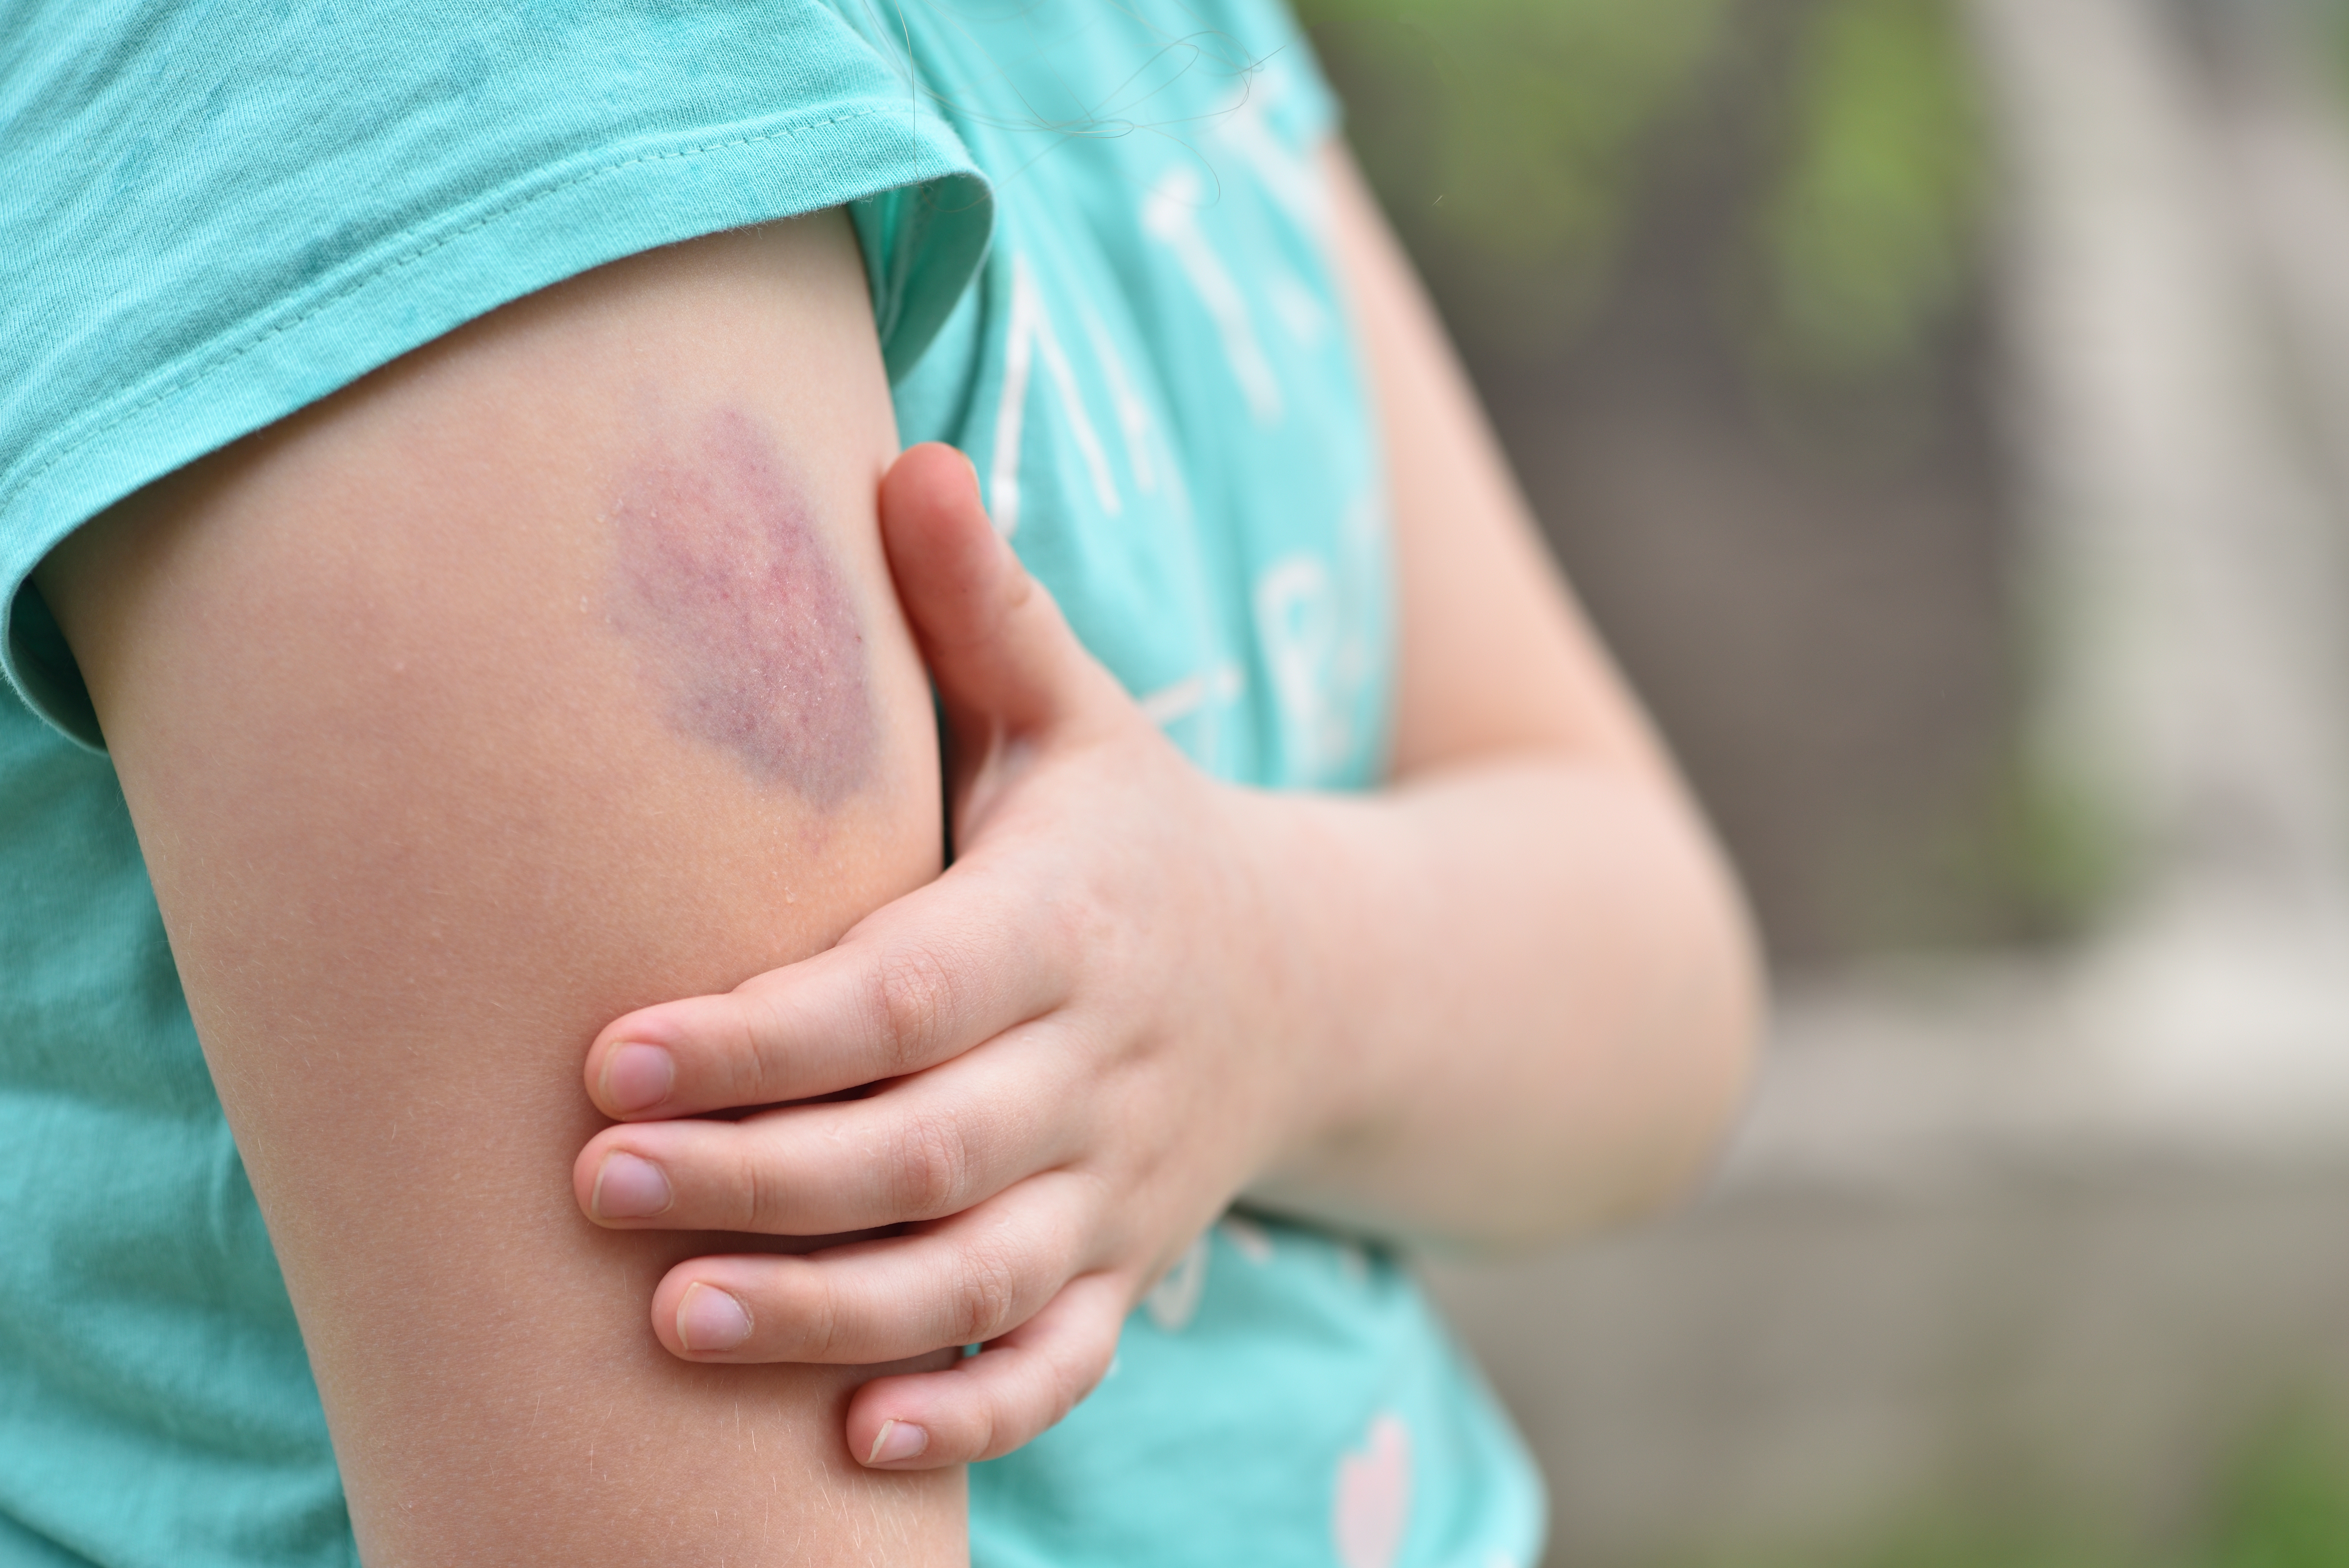 Bruises | Source: Shutterstock